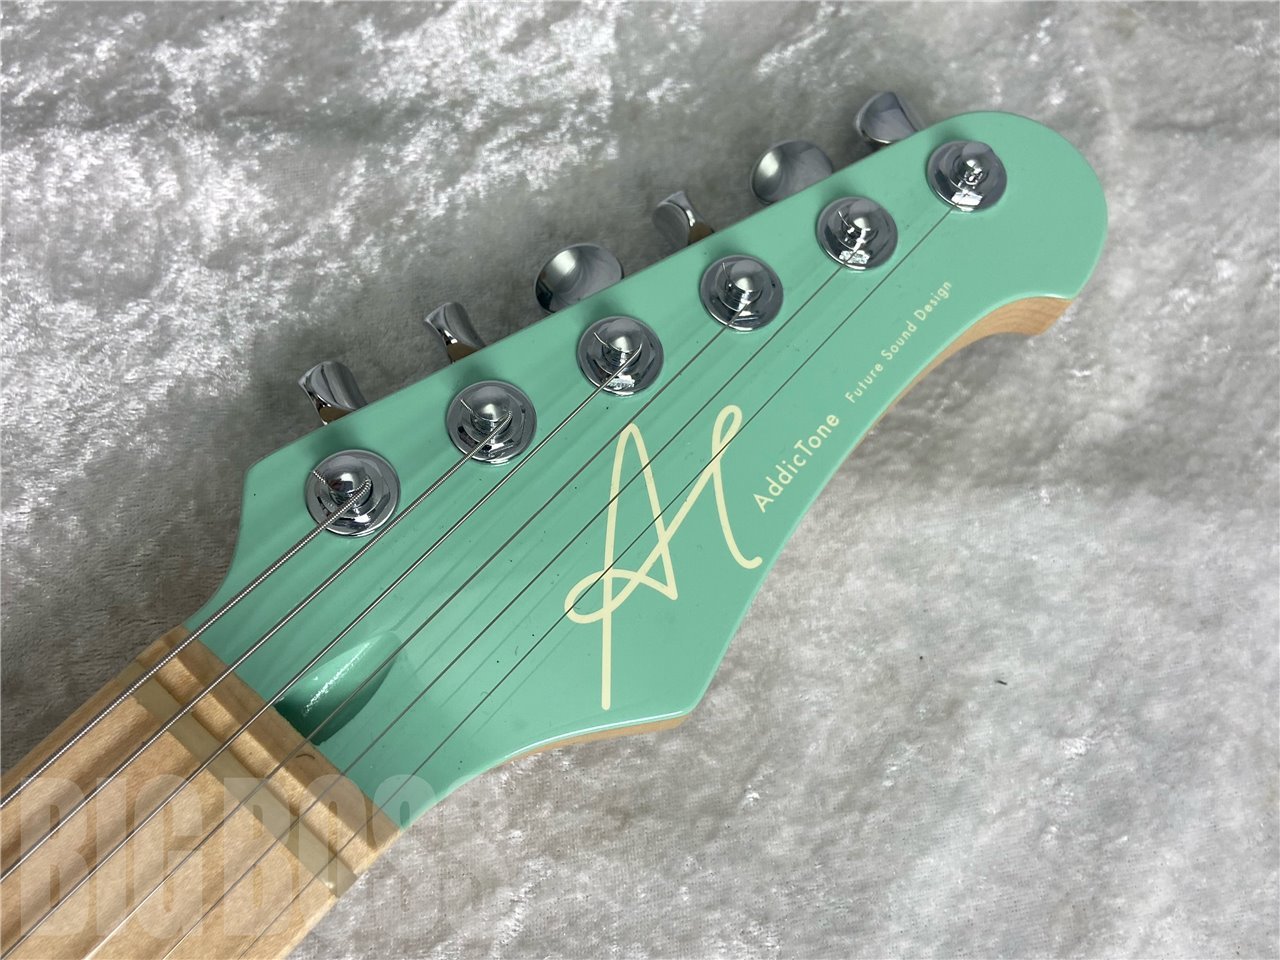 【即納可能】Addictone Custom Guitars(アディクトーンカスタムギターズ) Arena / Seaform Green お茶の水駅前店(東京)